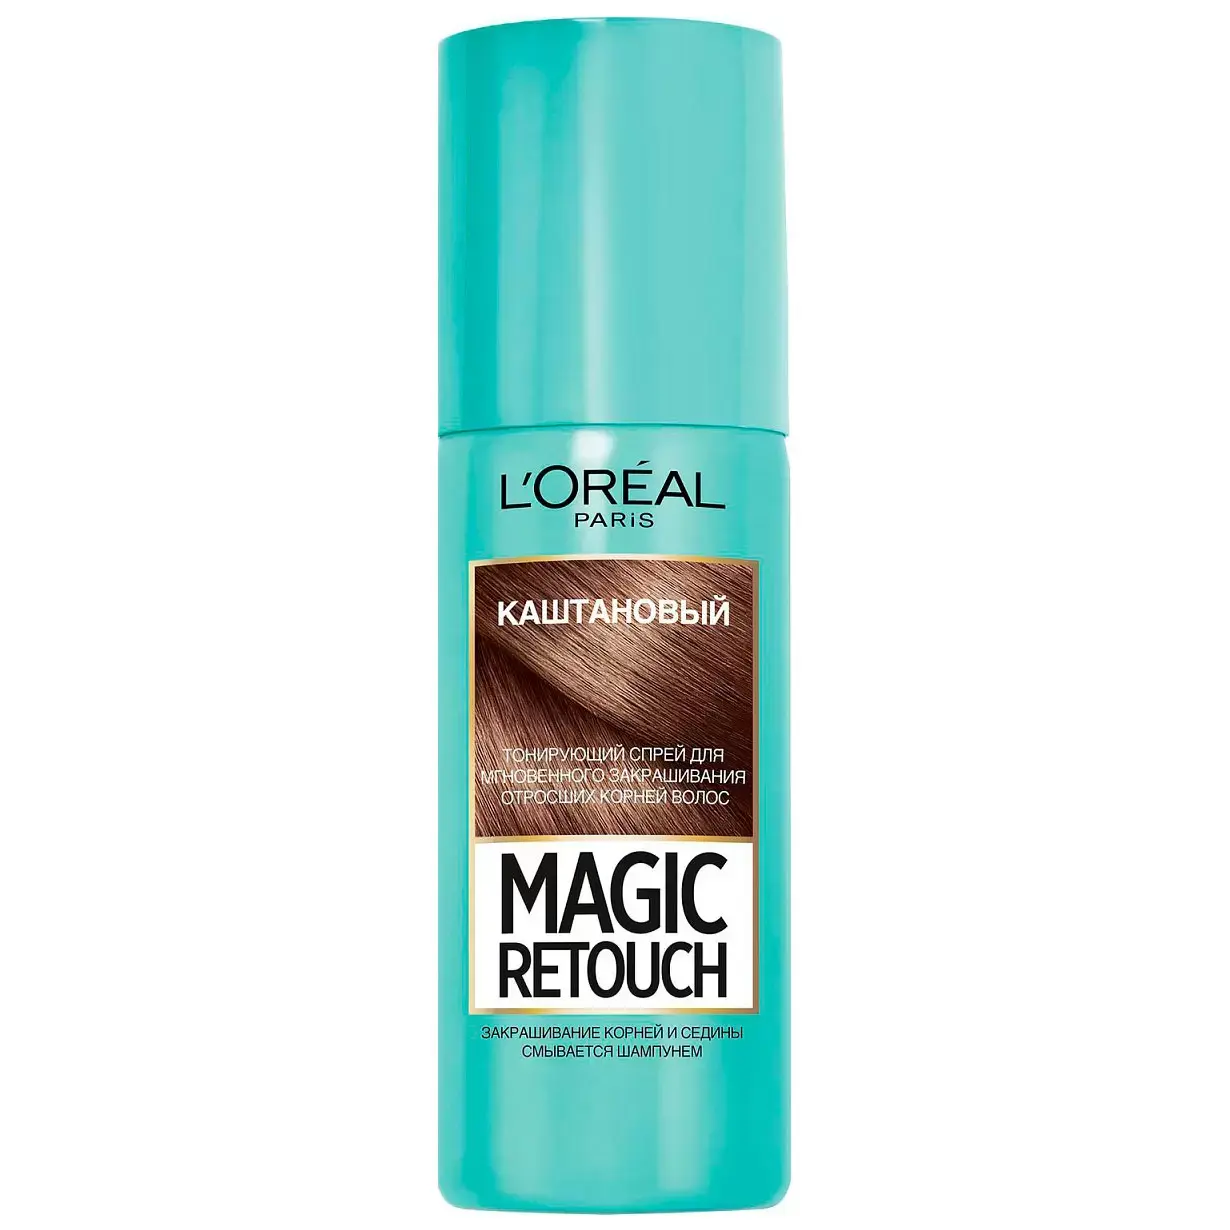 ЛОРЕАЛЬ (L-OREAL) Magic Retouch спрей для волос тонир 75мл Каштановый (Лореаль Либрамон, БЕЛЬГИЯ)